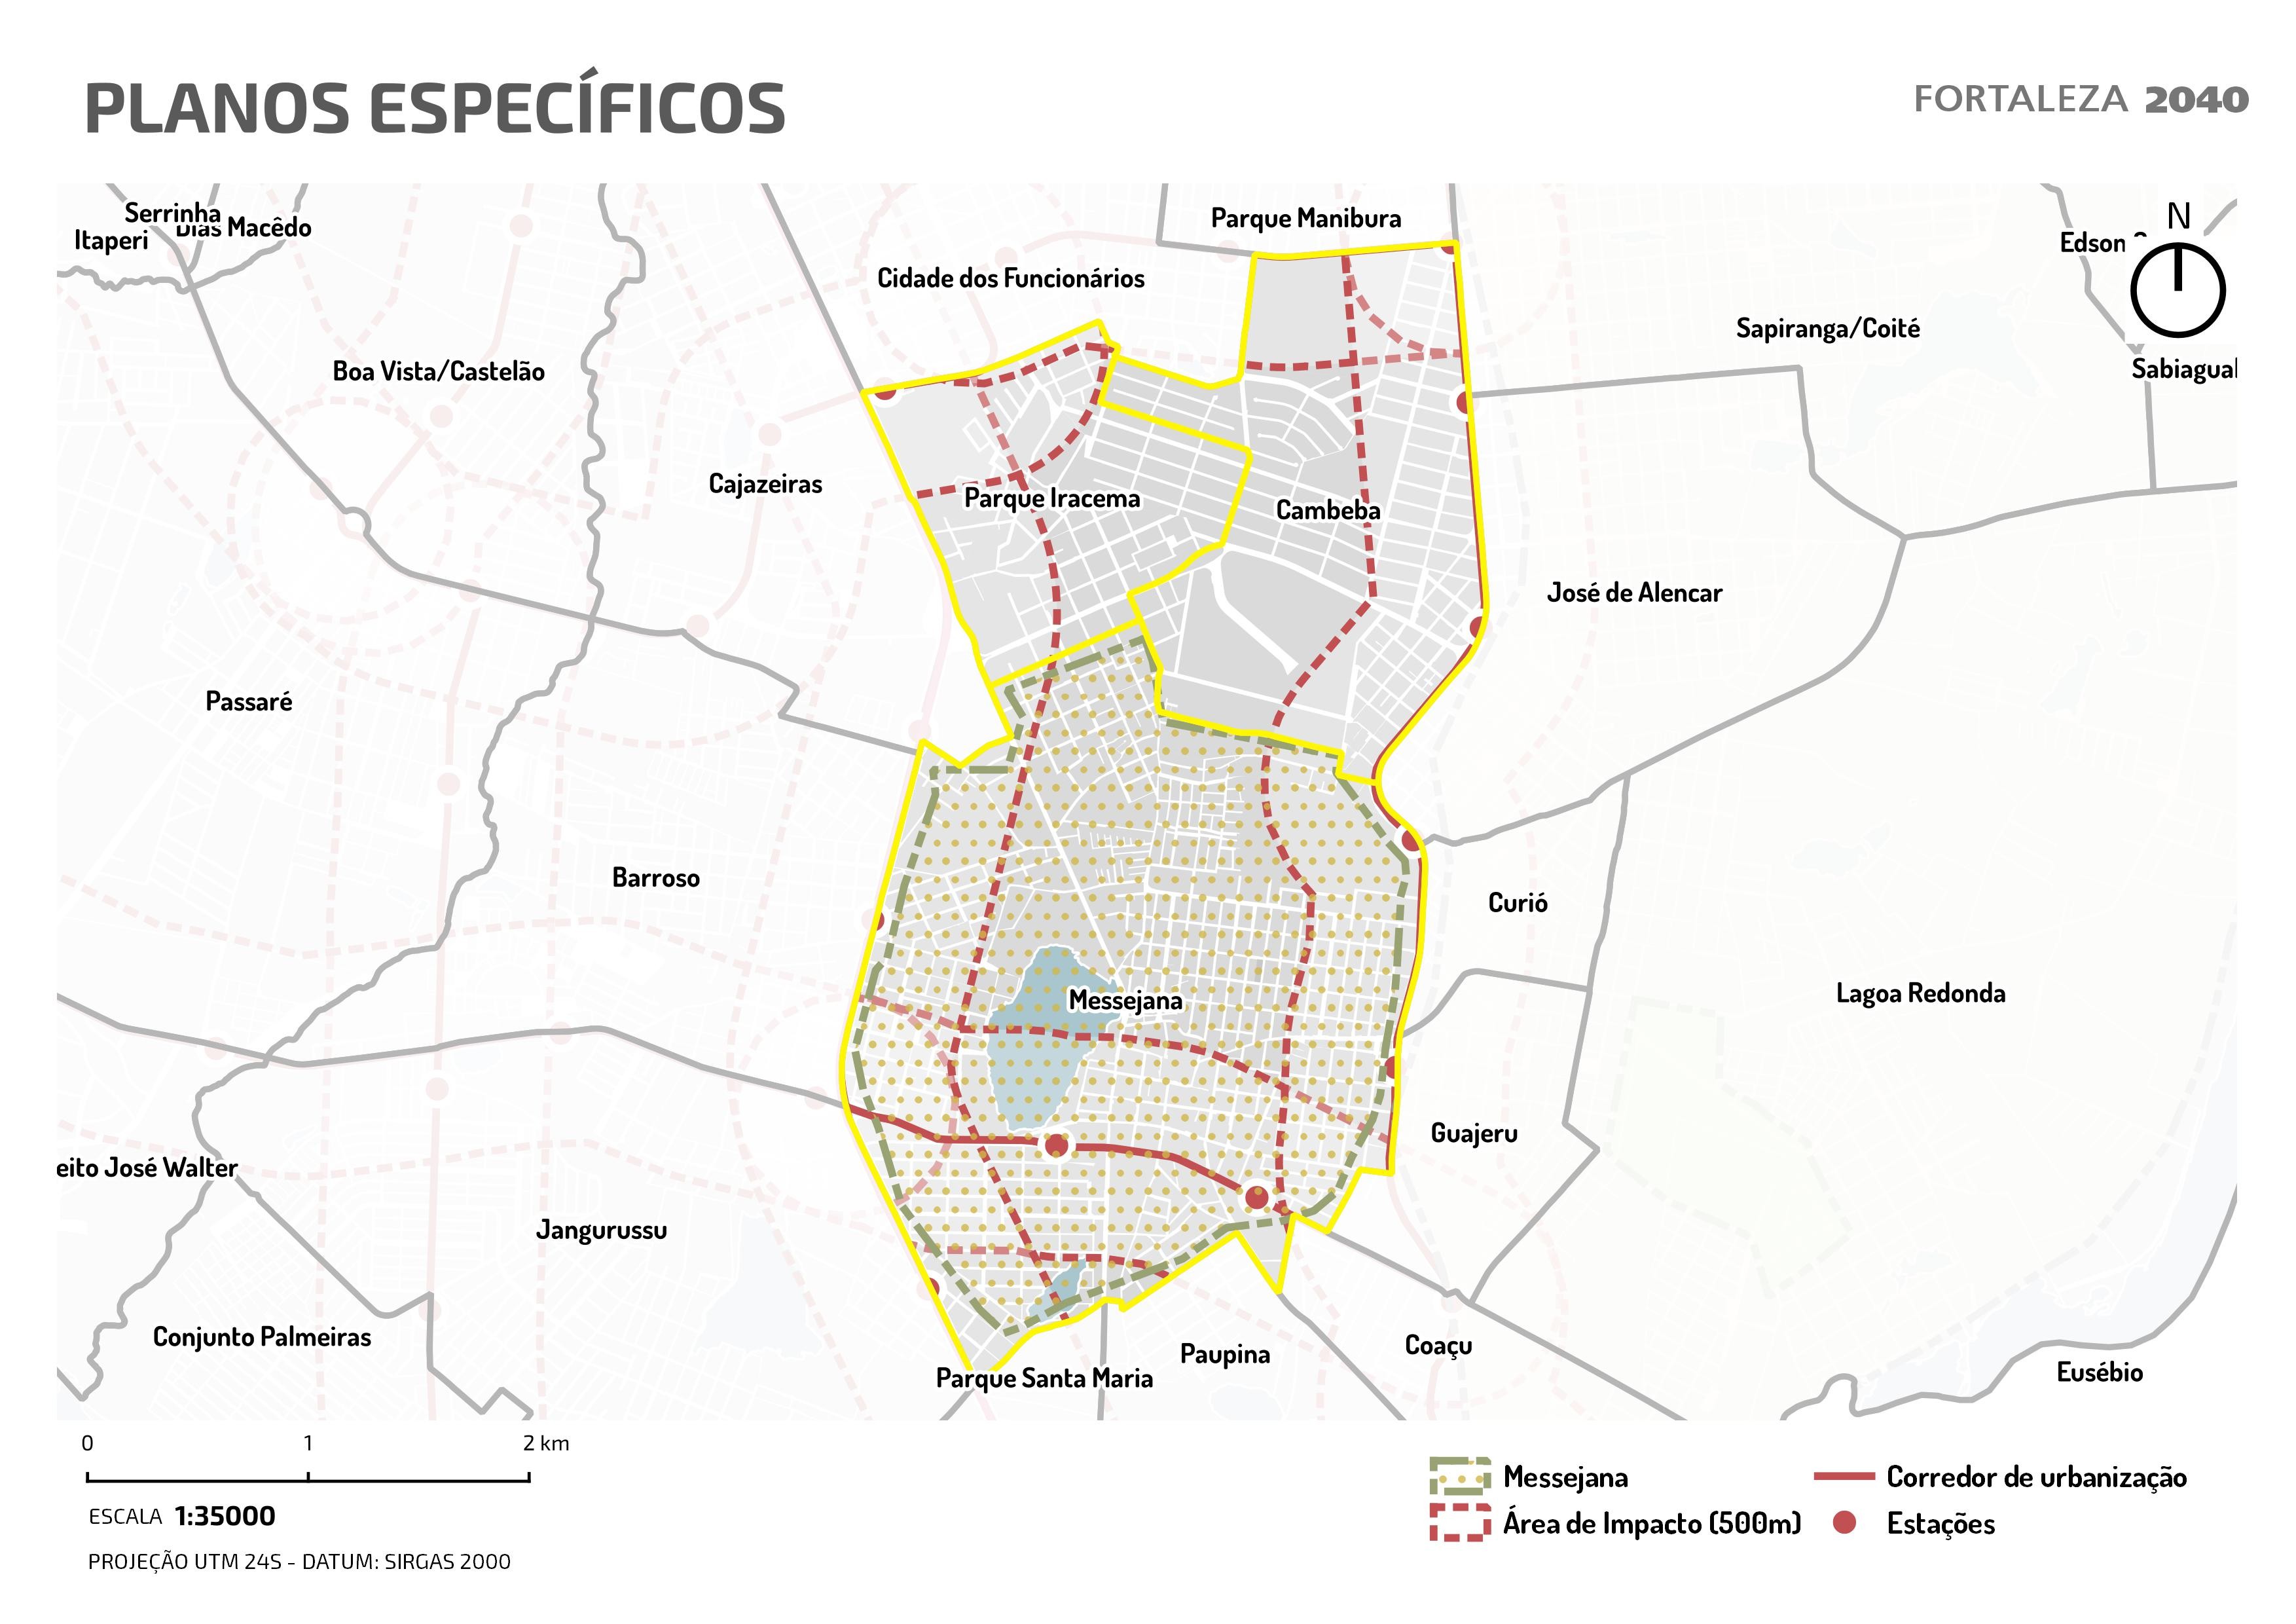 Fóruns Territoriais de Fortaleza - Mapa dos Fóruns Territoriais